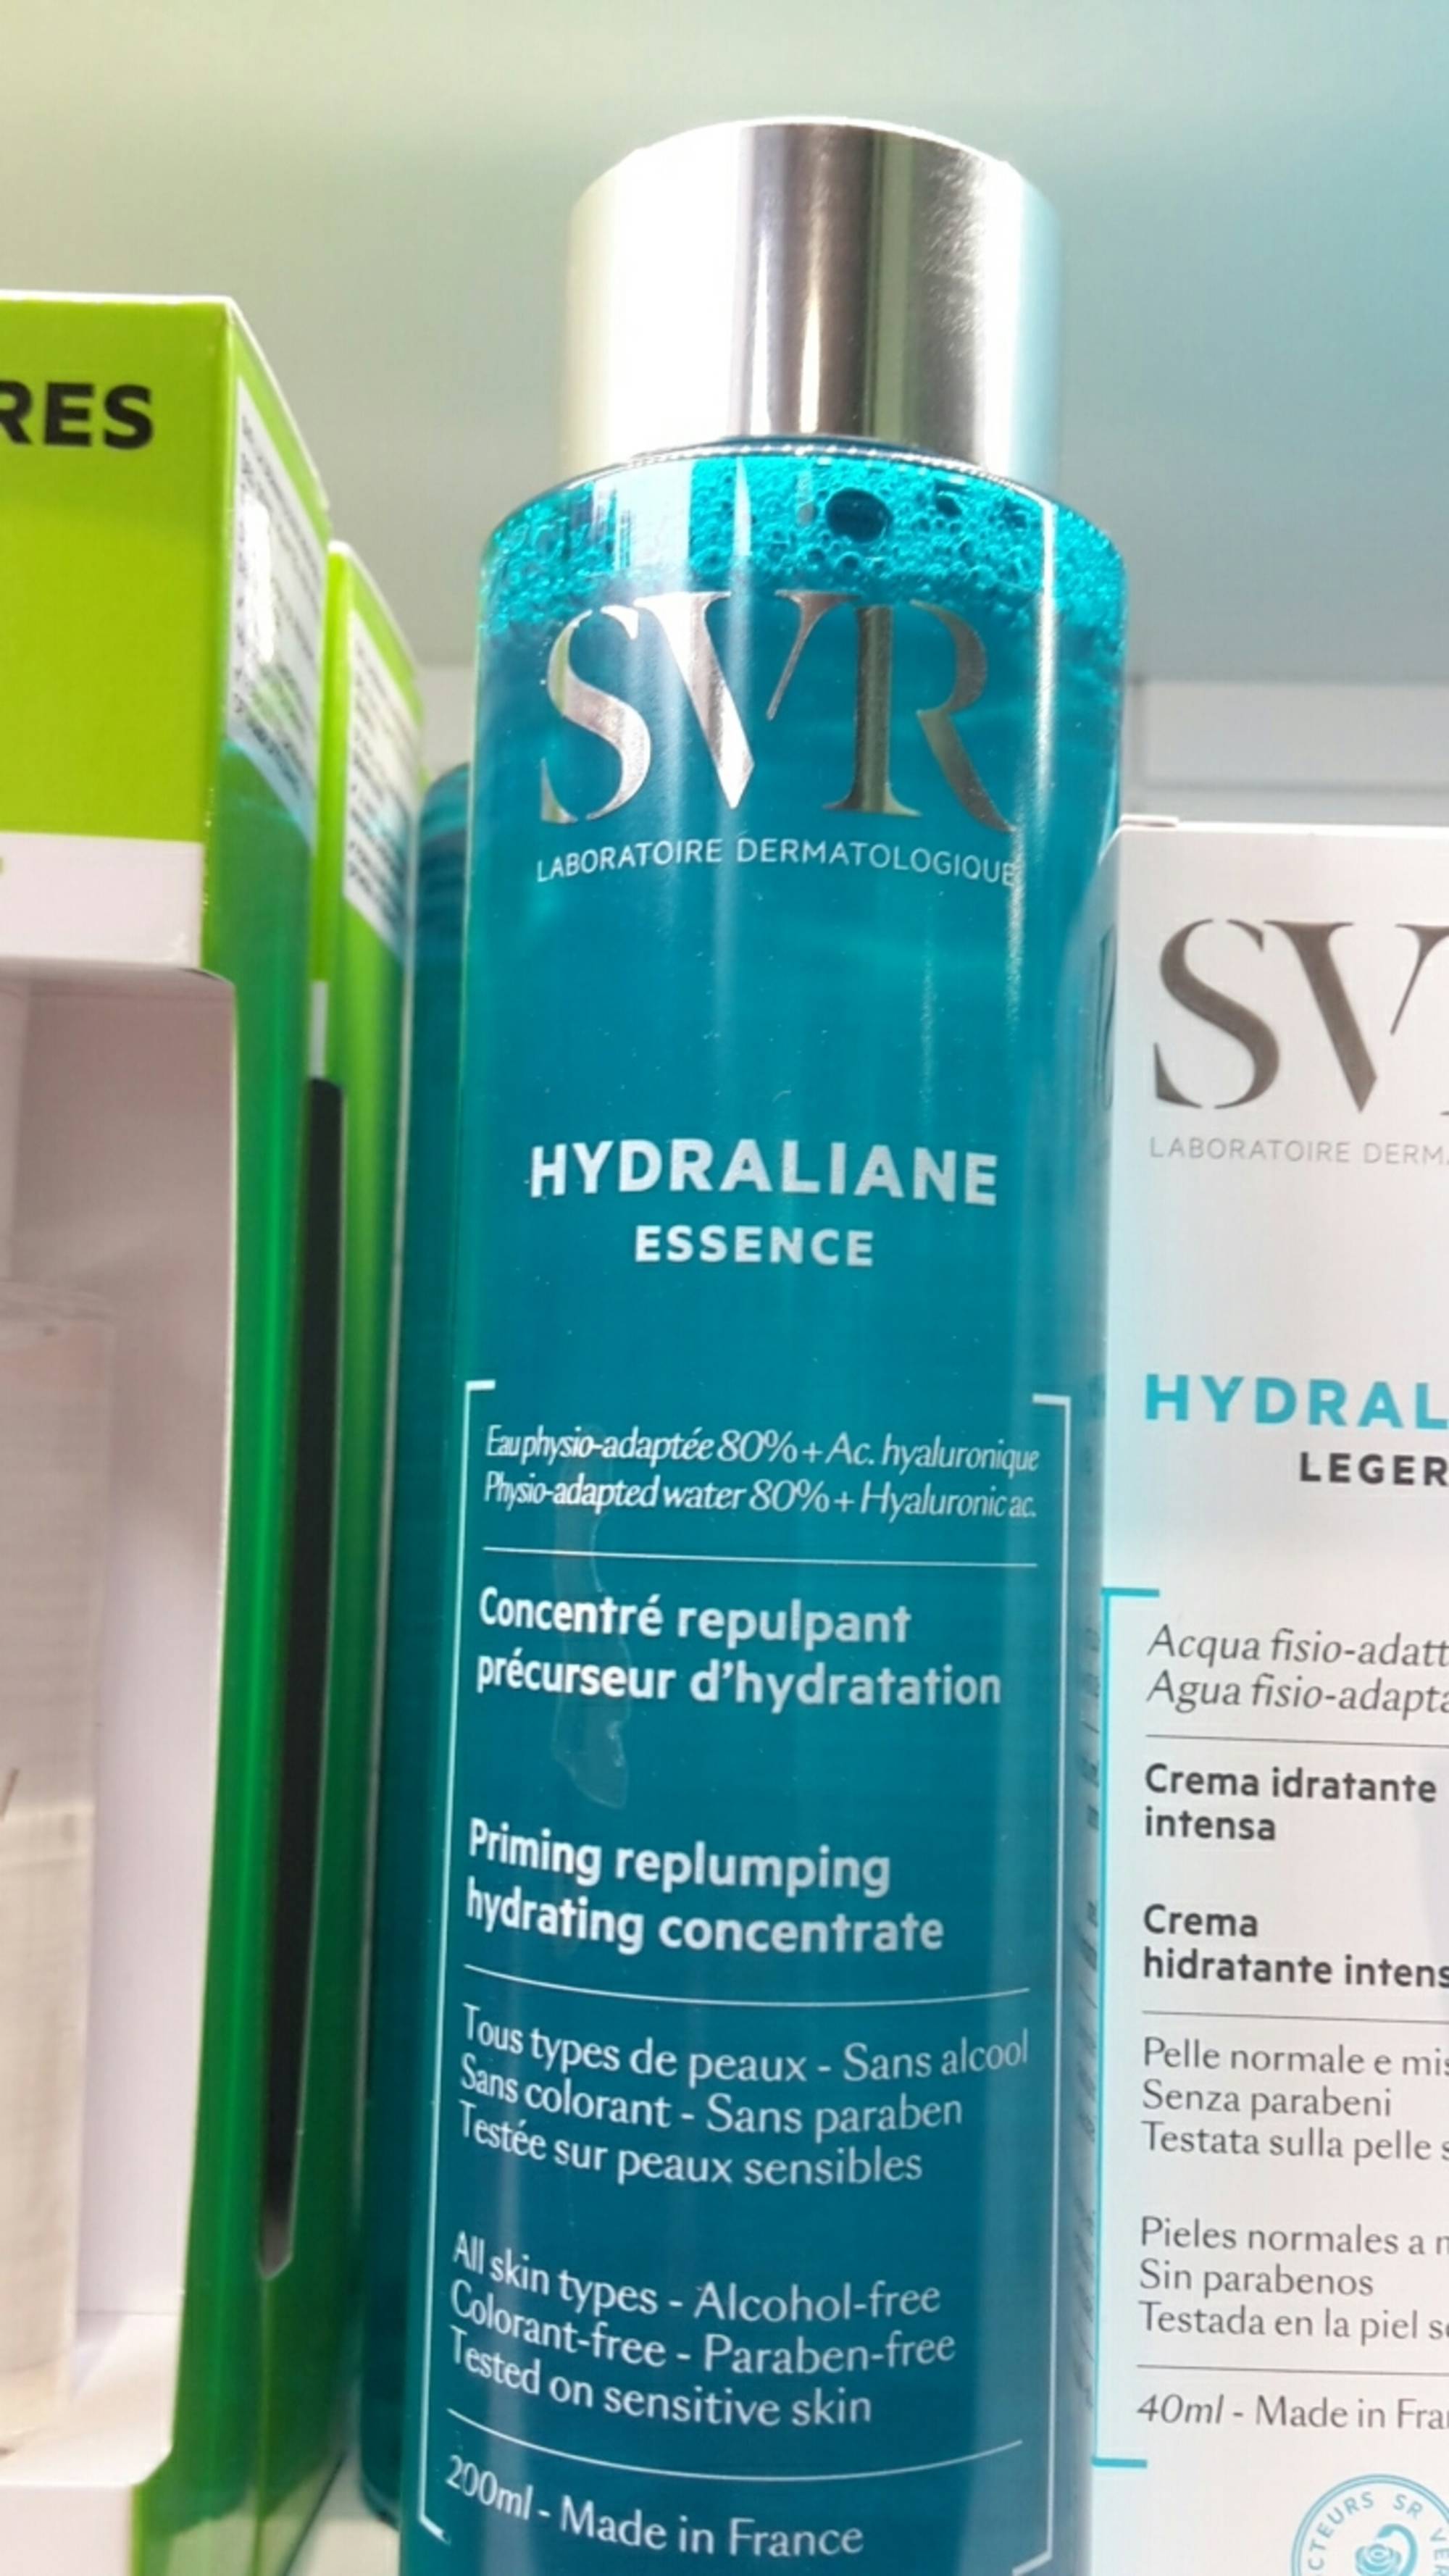 SVR - Hydraliane essence - Concentré repulpant précurseur d'hydratation